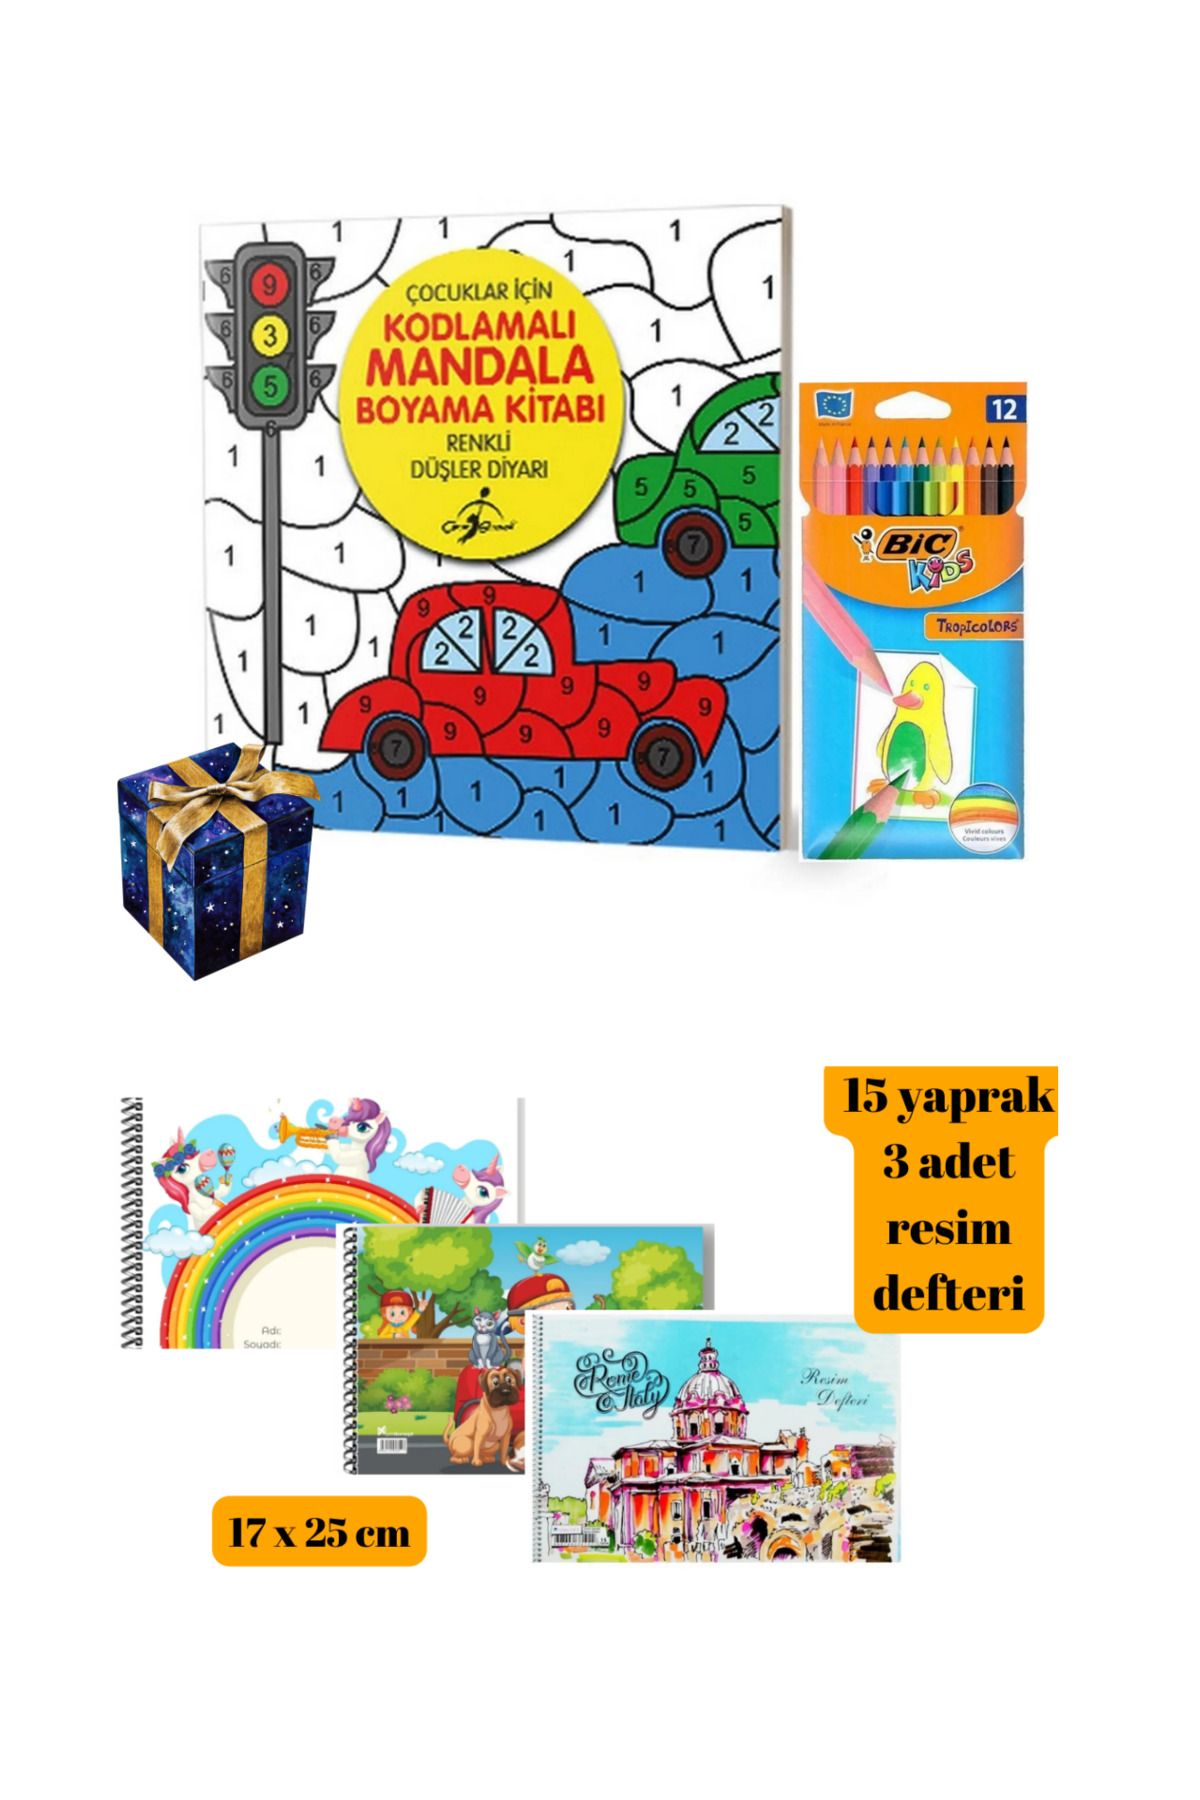 Bic Çocuklar için Mandala Boyama Kitabı Resim Defteri ve Bic Kuru Boya Kalemi